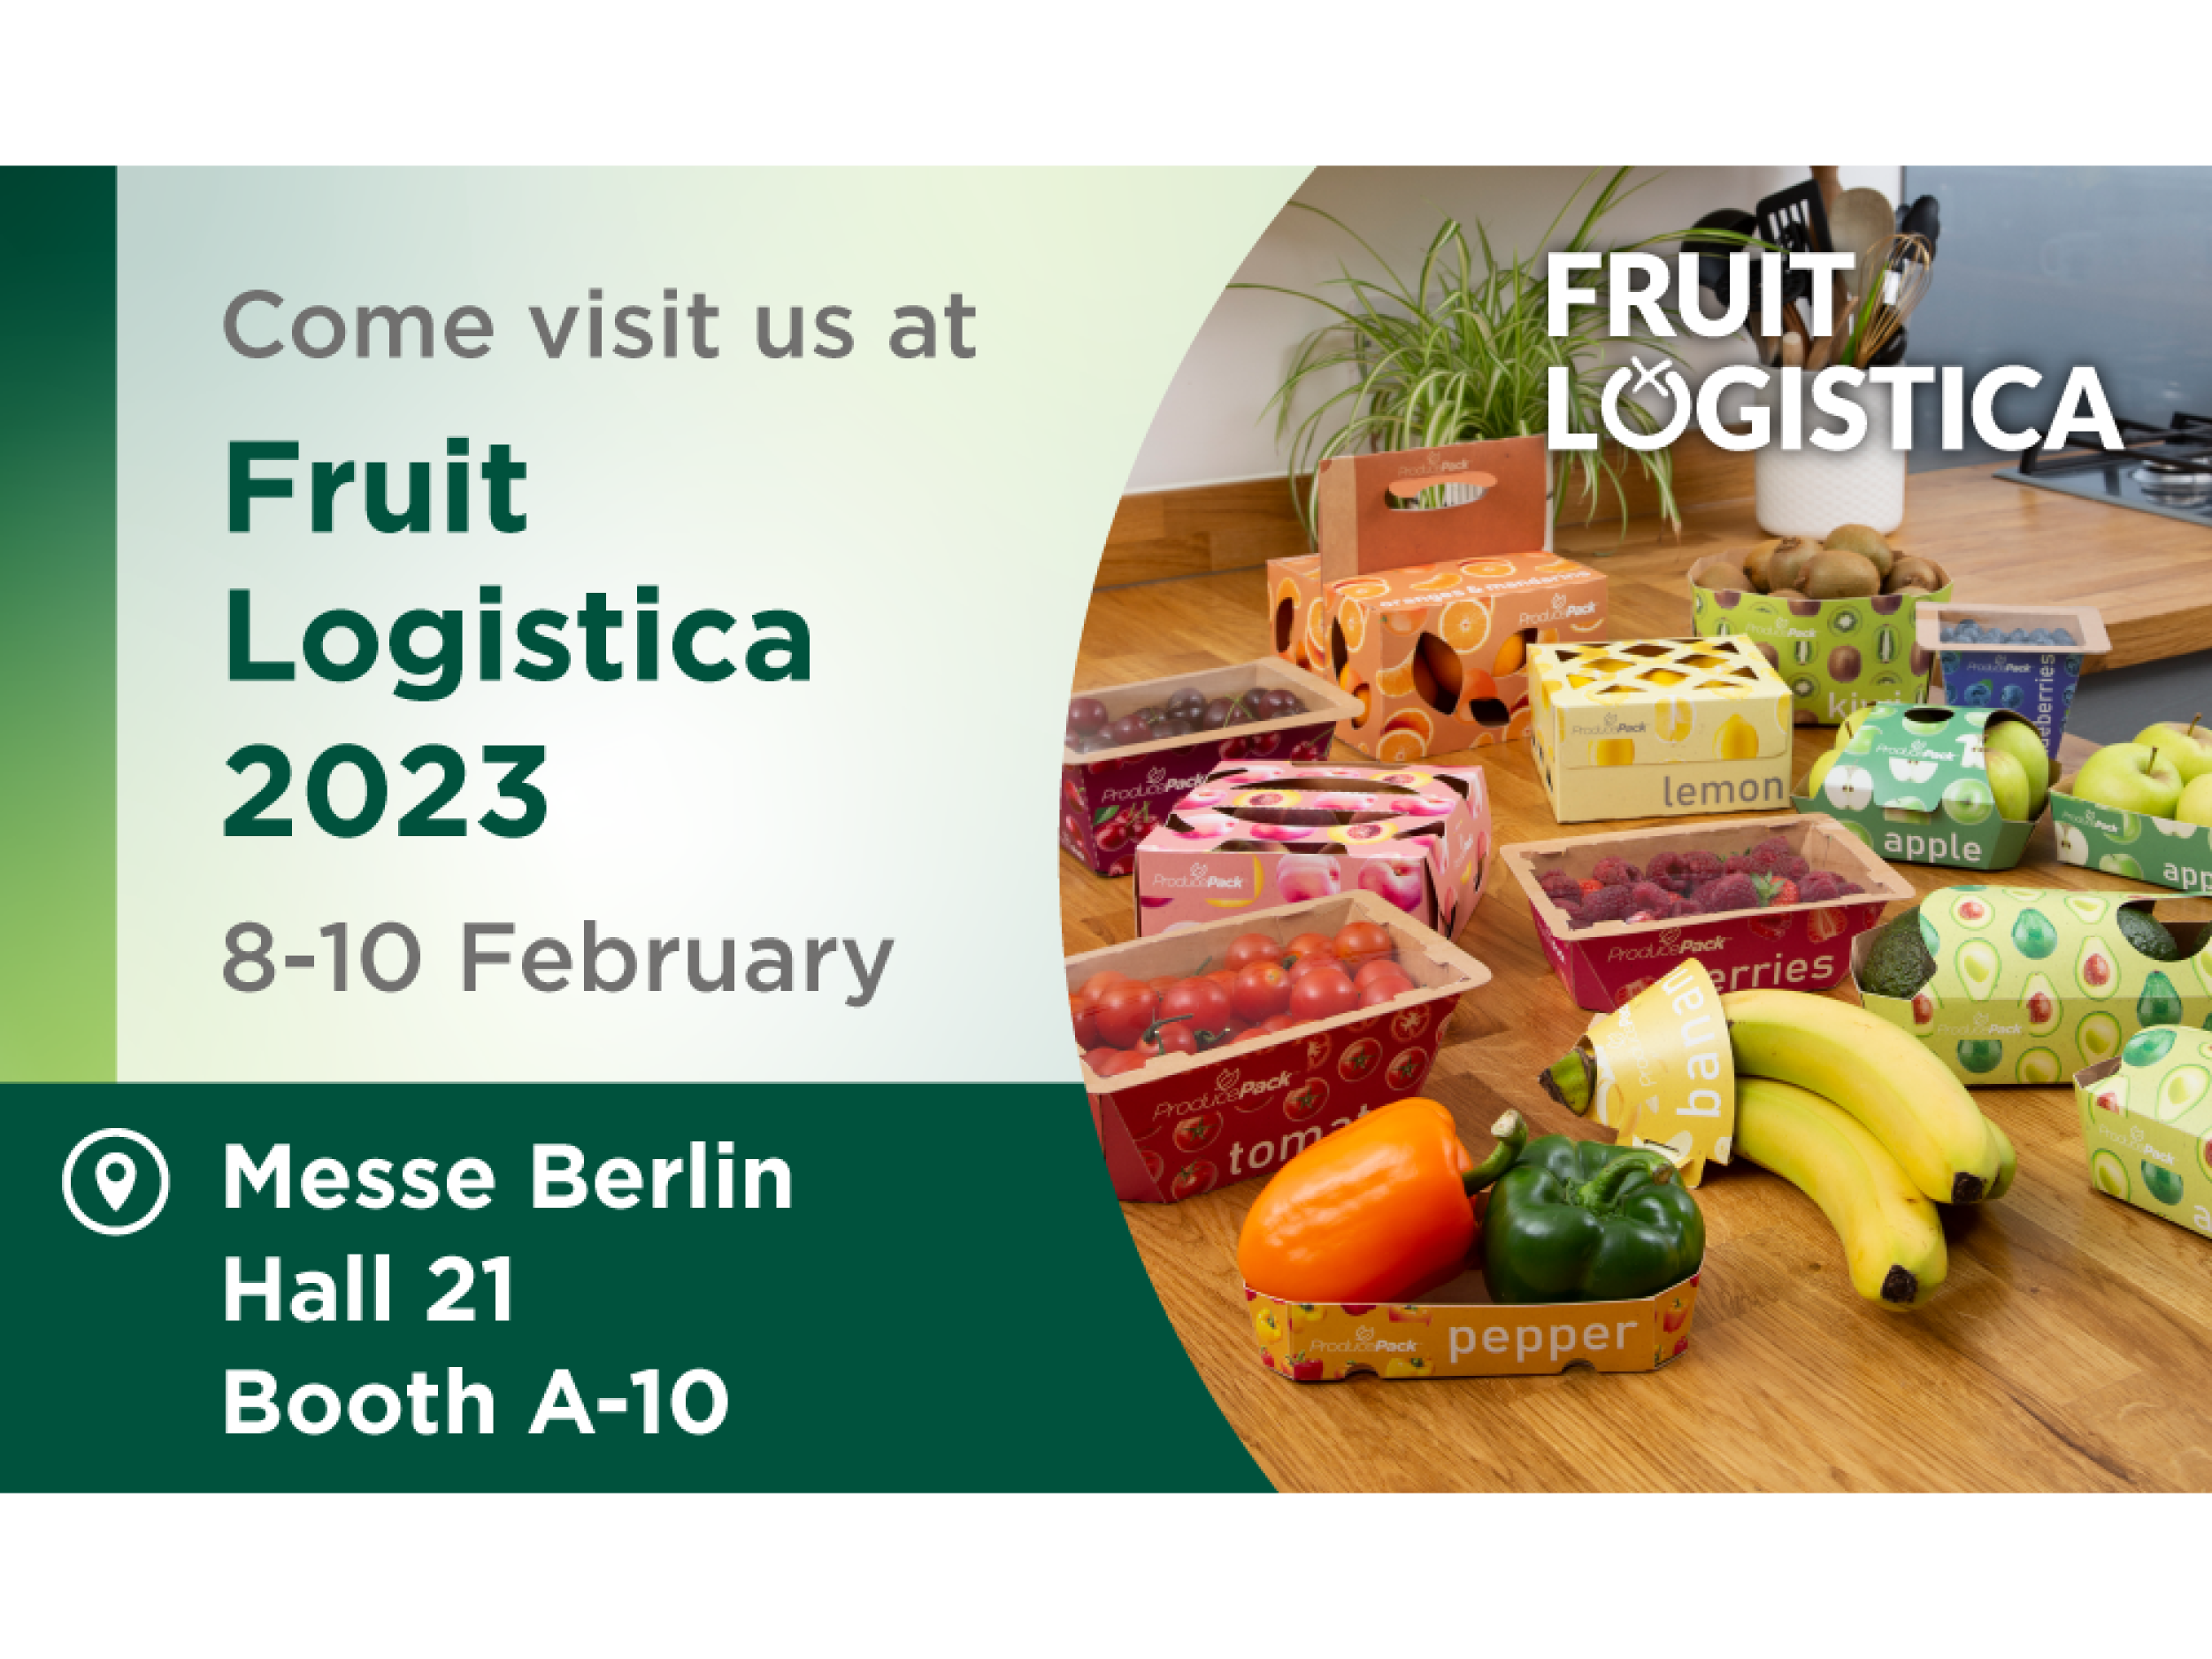 Visite a Graphic Packaging International en Fruit Logistica 2023 y vea nuestra gama completa de empaques para productos frescos.